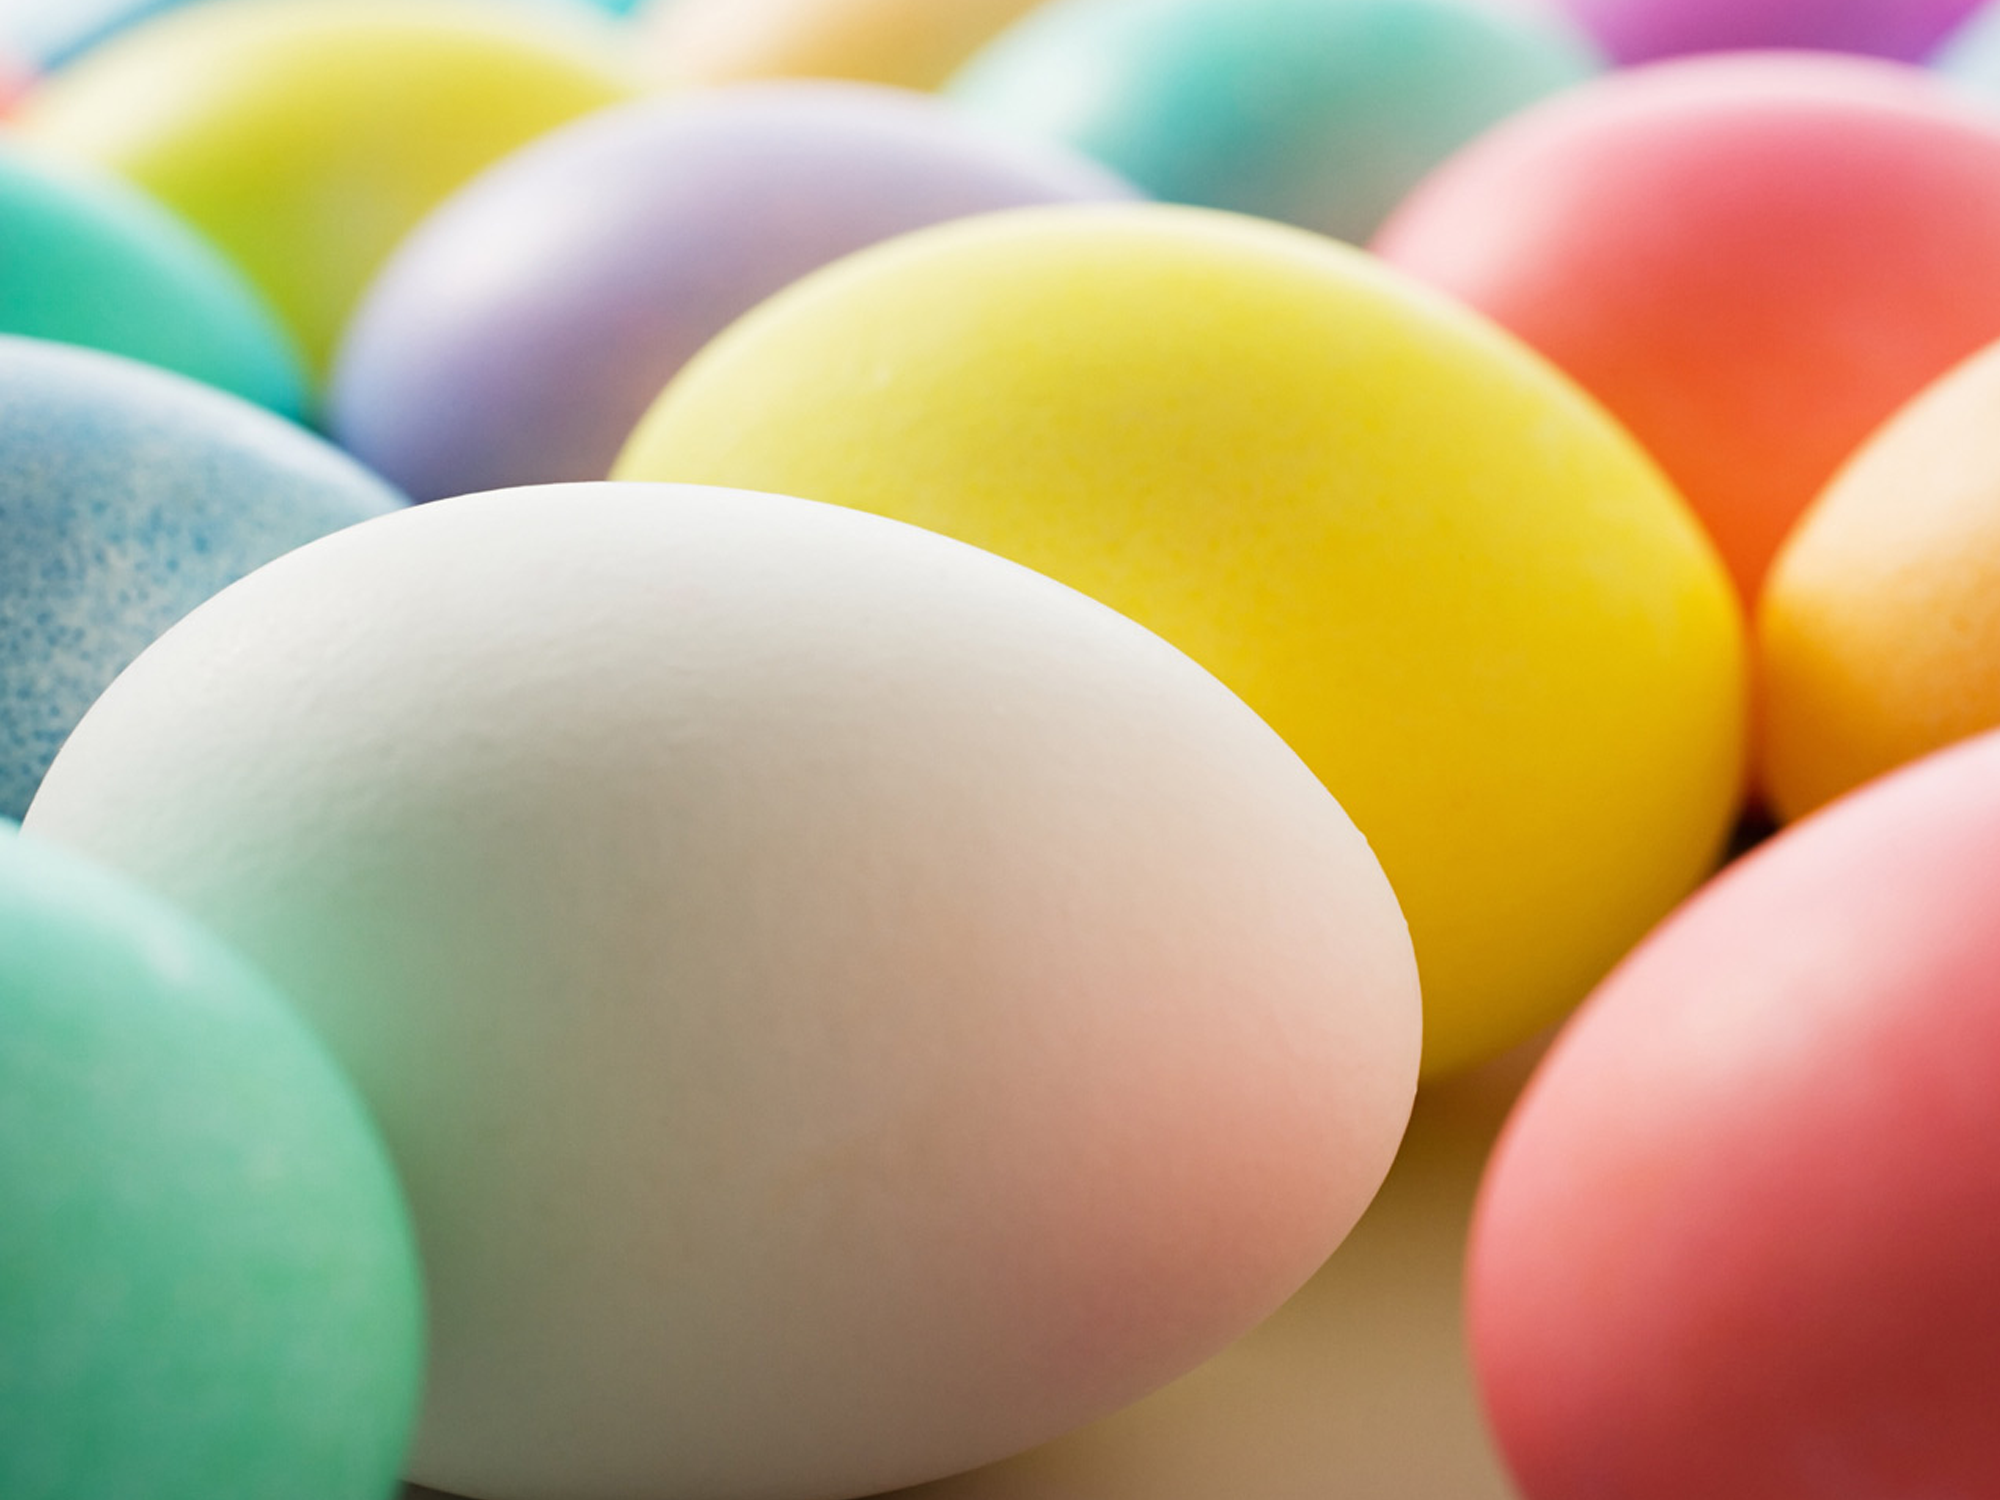 Zdarma velikonoční tapeta s obrázkem několika velikonočních vajíček různých barev